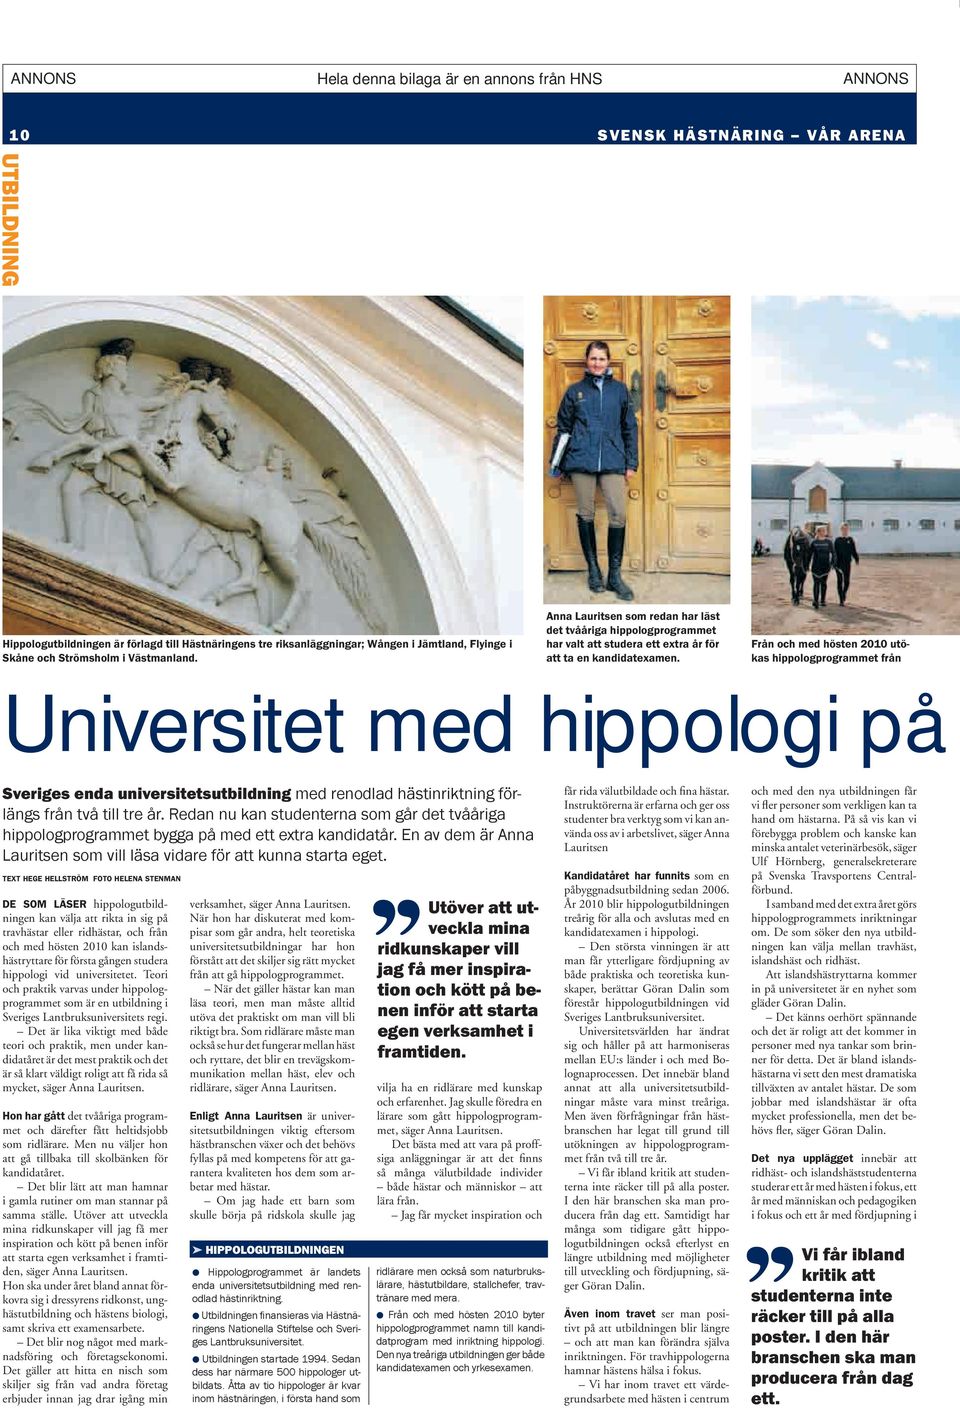 Från och med hösten 2010 utökas hippologprogrammet från Universitet med hippologi på Sveriges enda universitetsutbildning med renodlad hästinriktning förlängs från två till tre år.